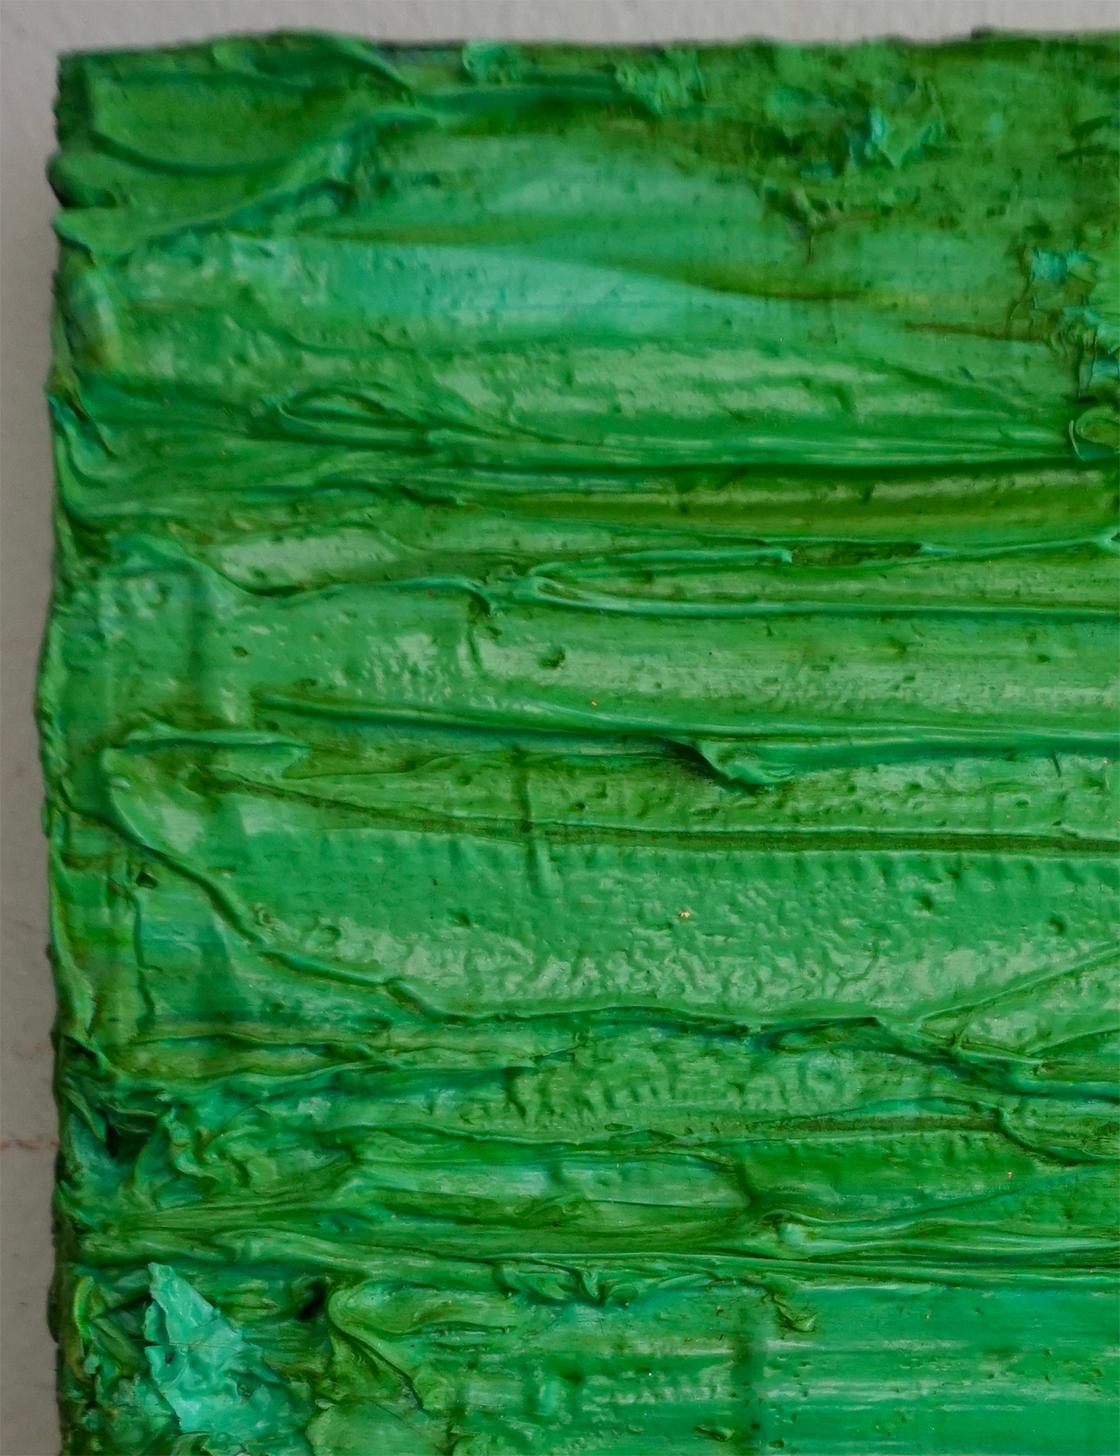 Tactile memory #114. Abstract Mixed media  painting on canvas  - Green Abstract Painting by Natasha Zupan